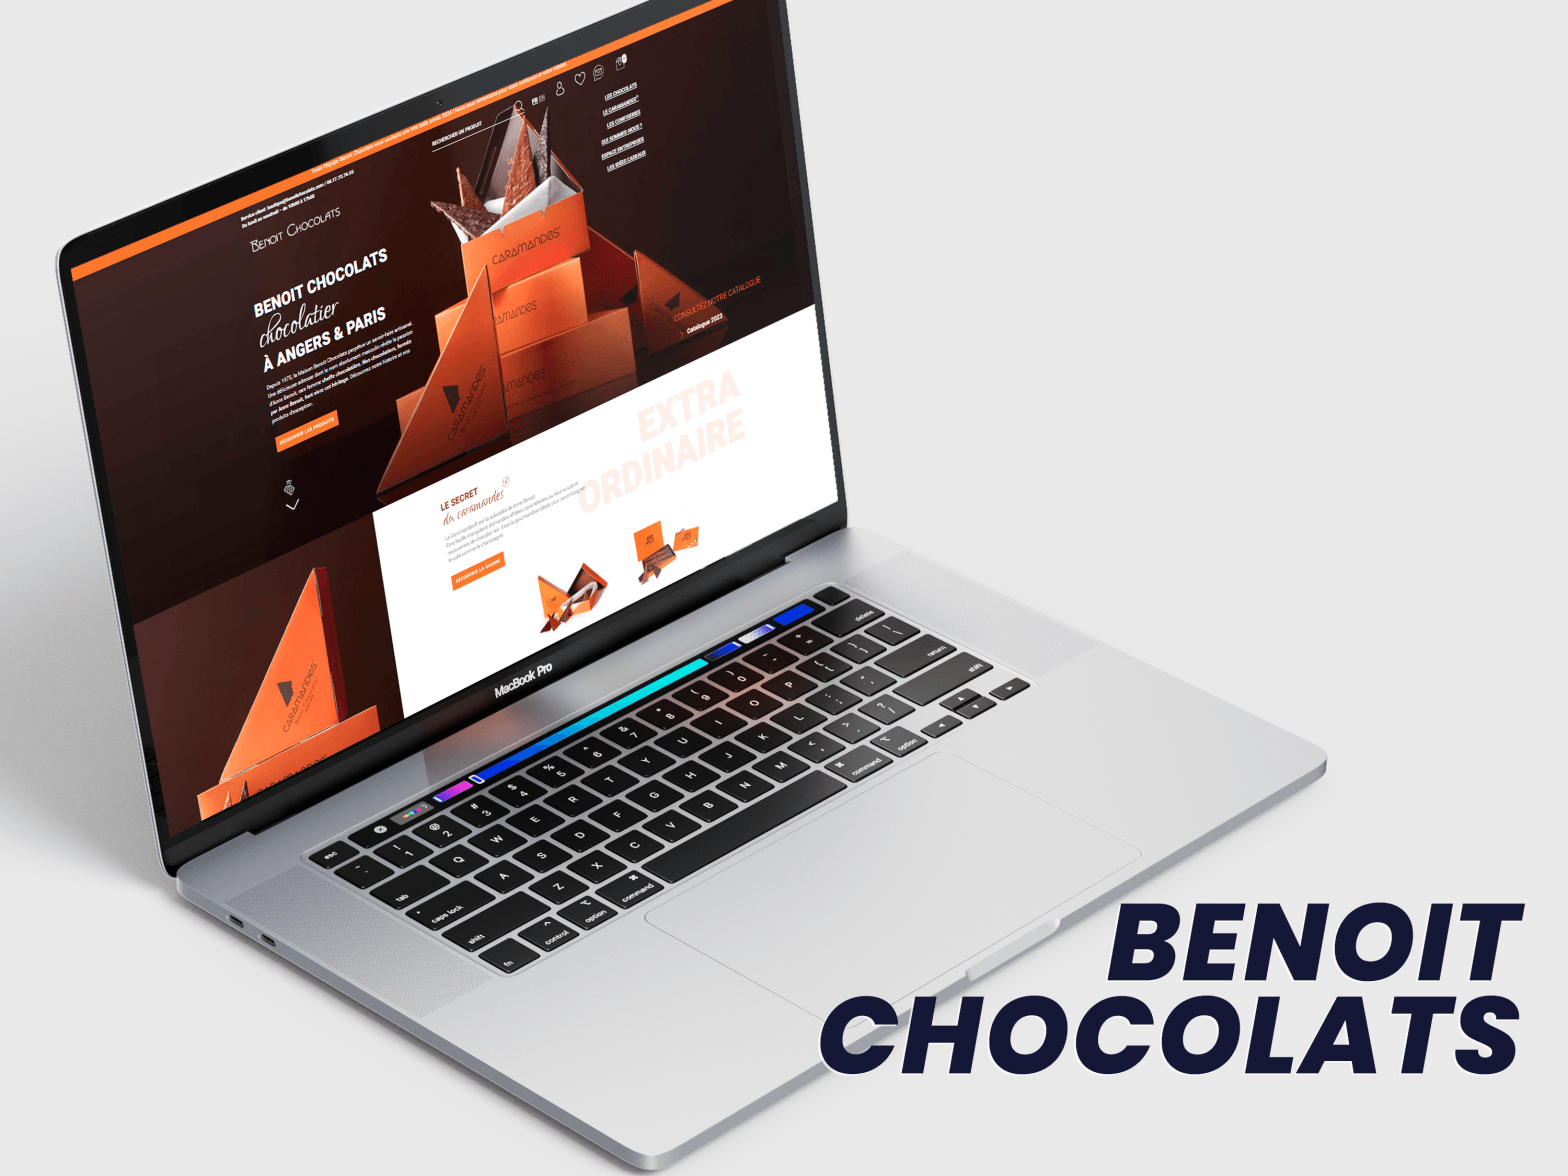 Benoit chocolats